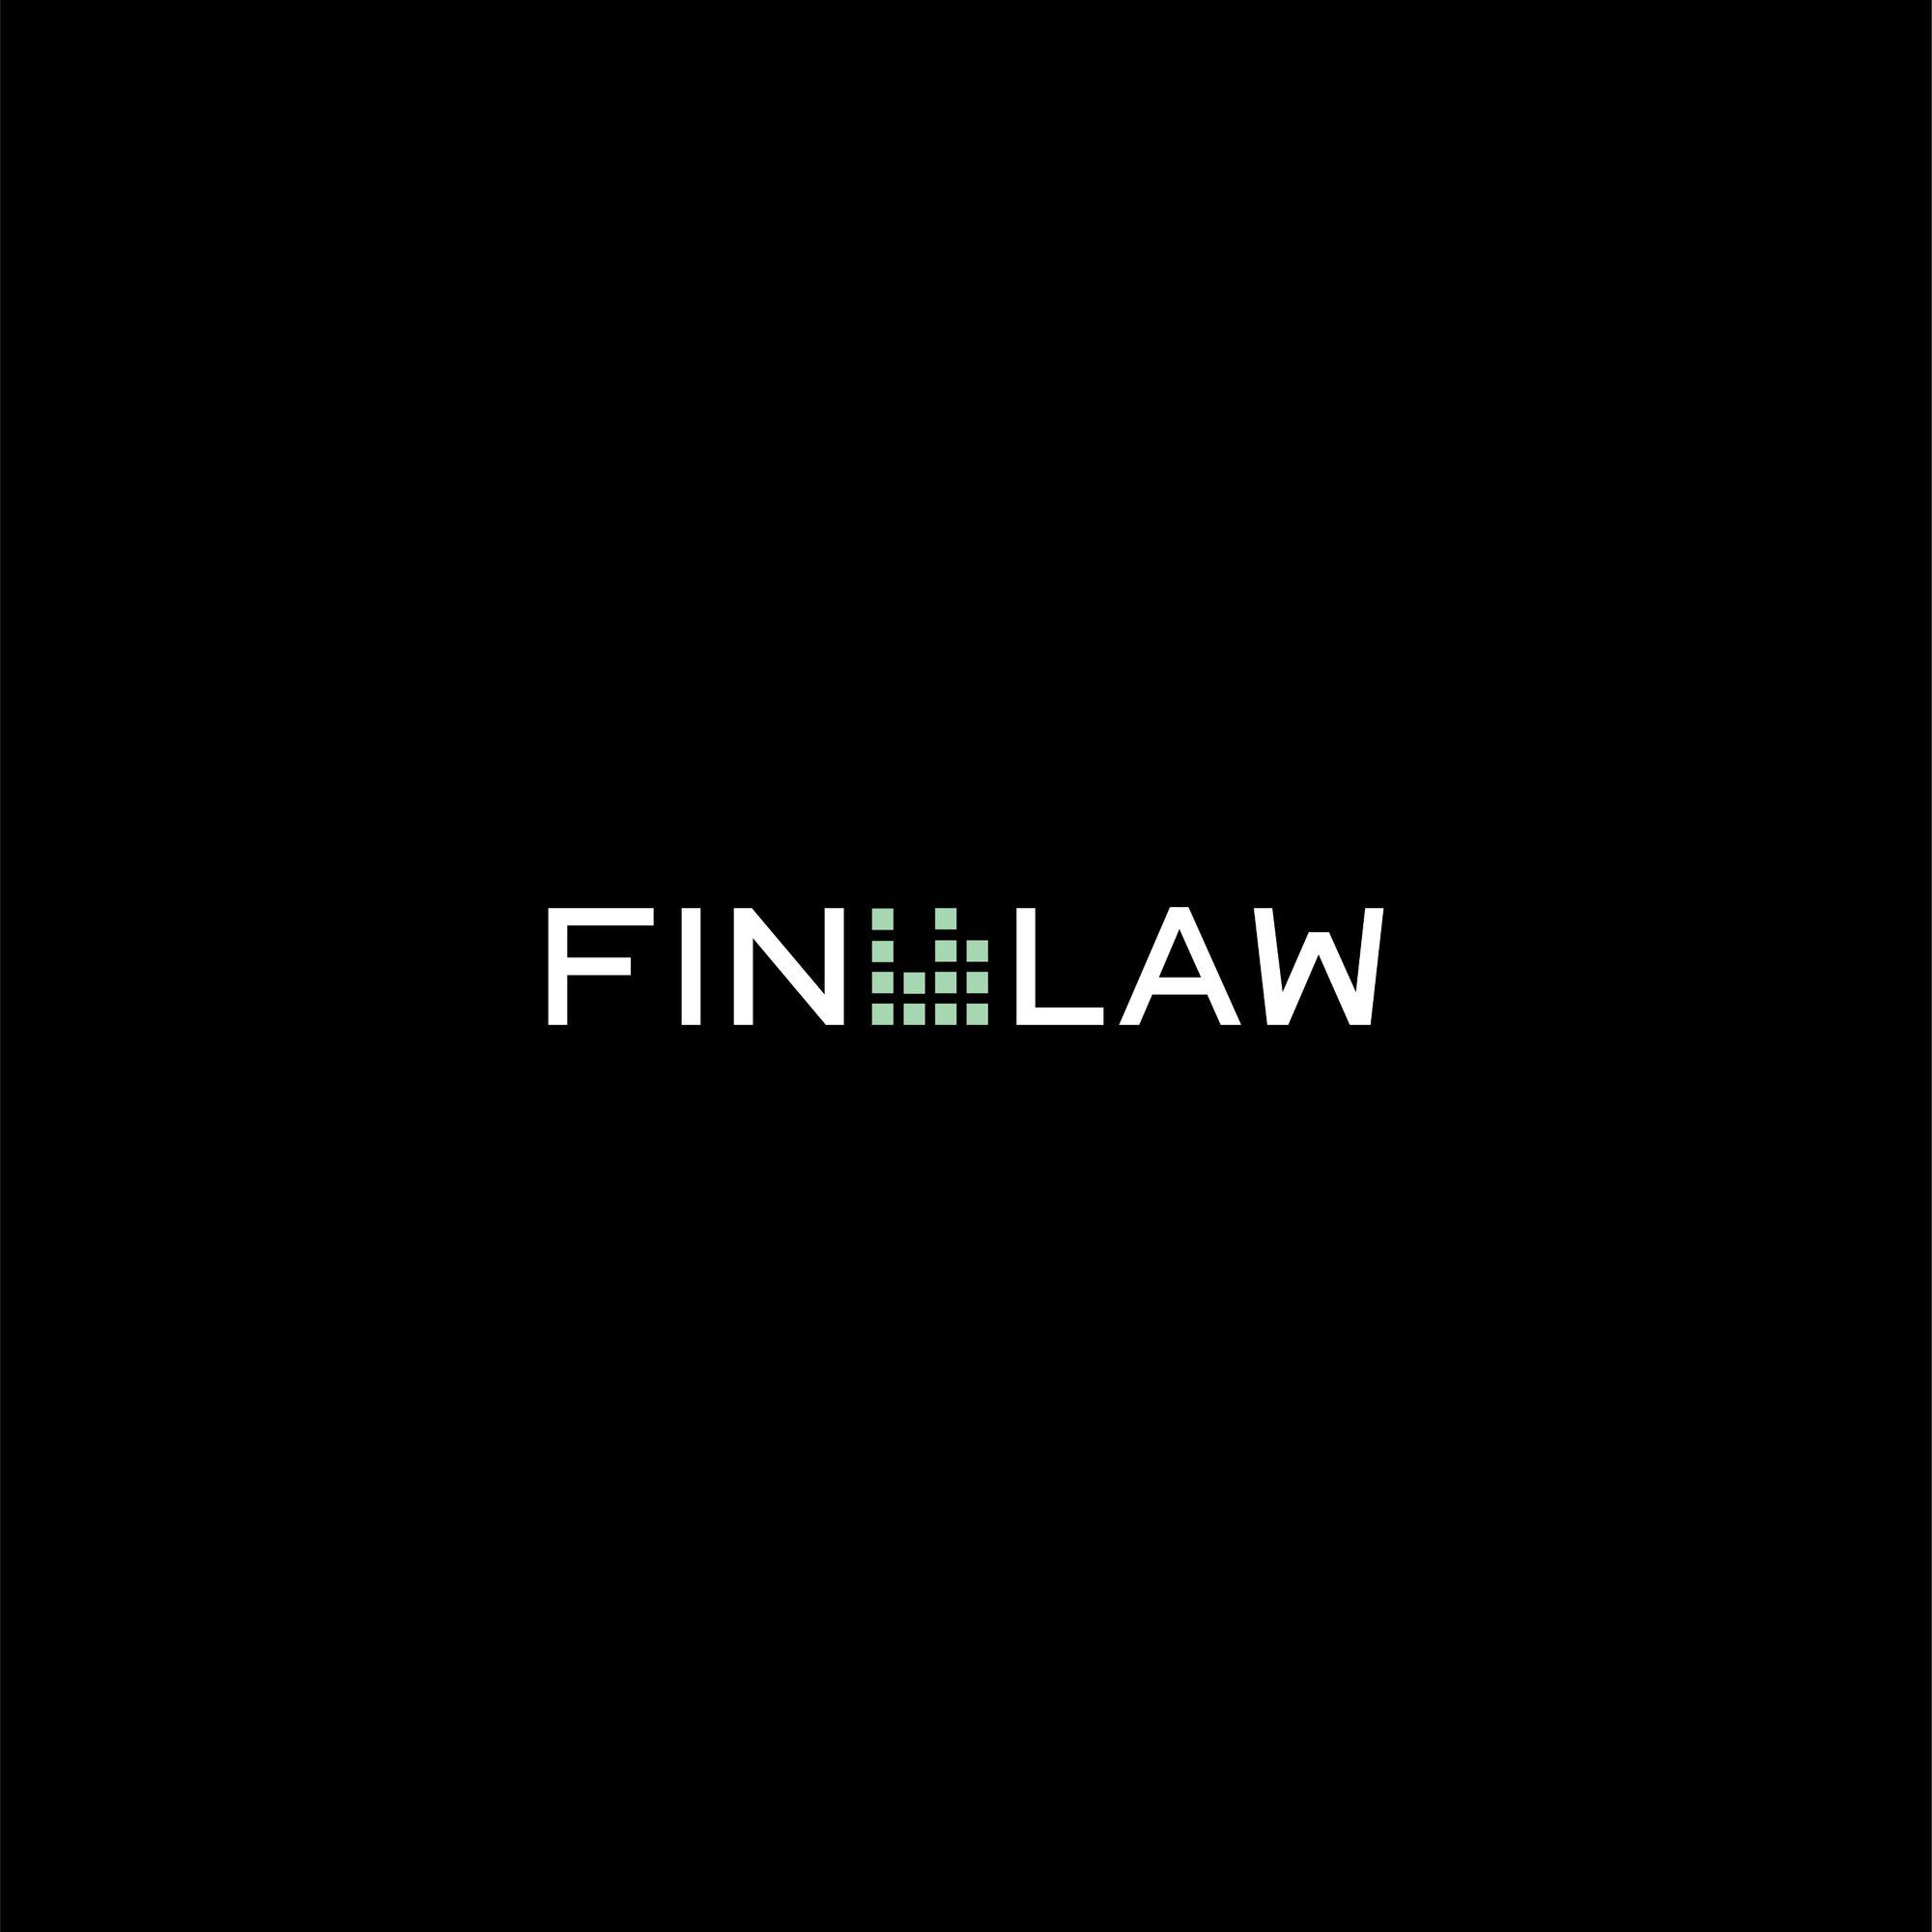 Kundenbild groß 3 FIN LAW - Legal Financial Advisory